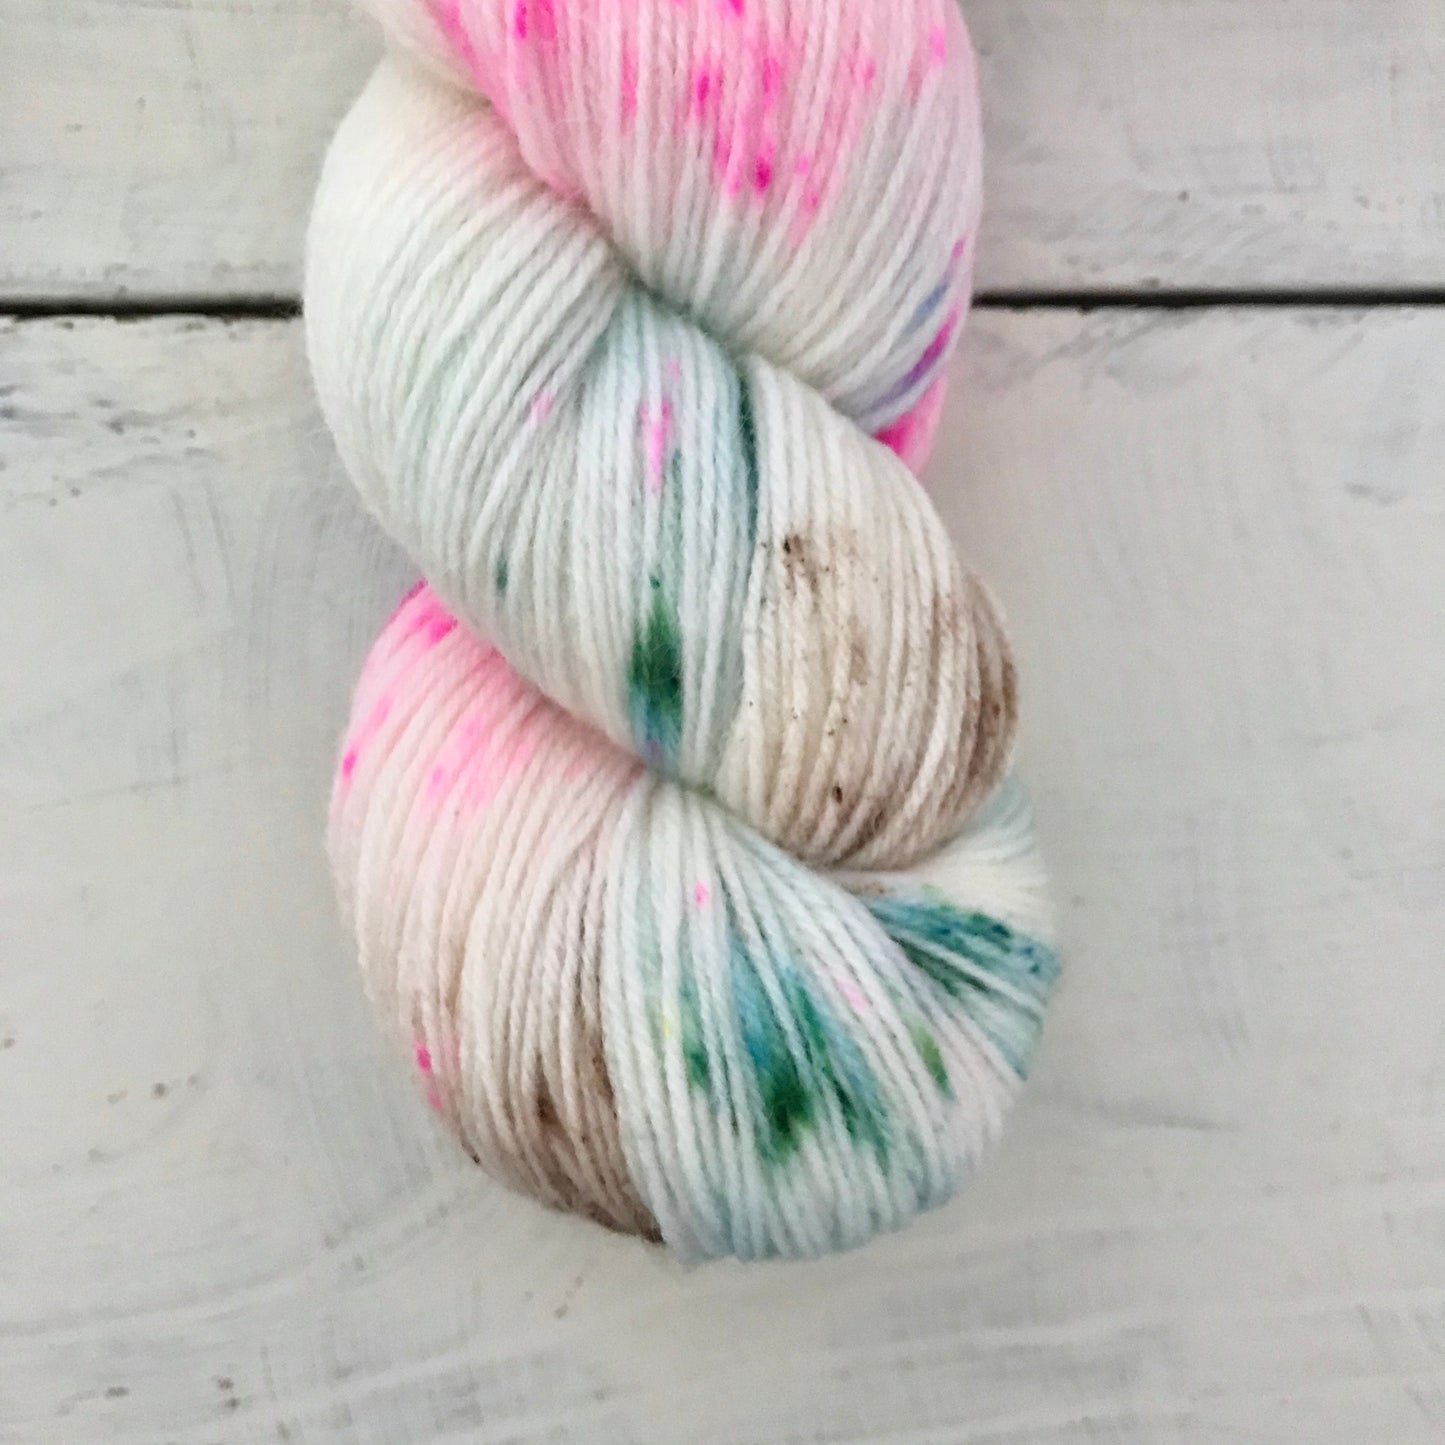 Hand-dyed yarn No.77 sock yarn "Clara"